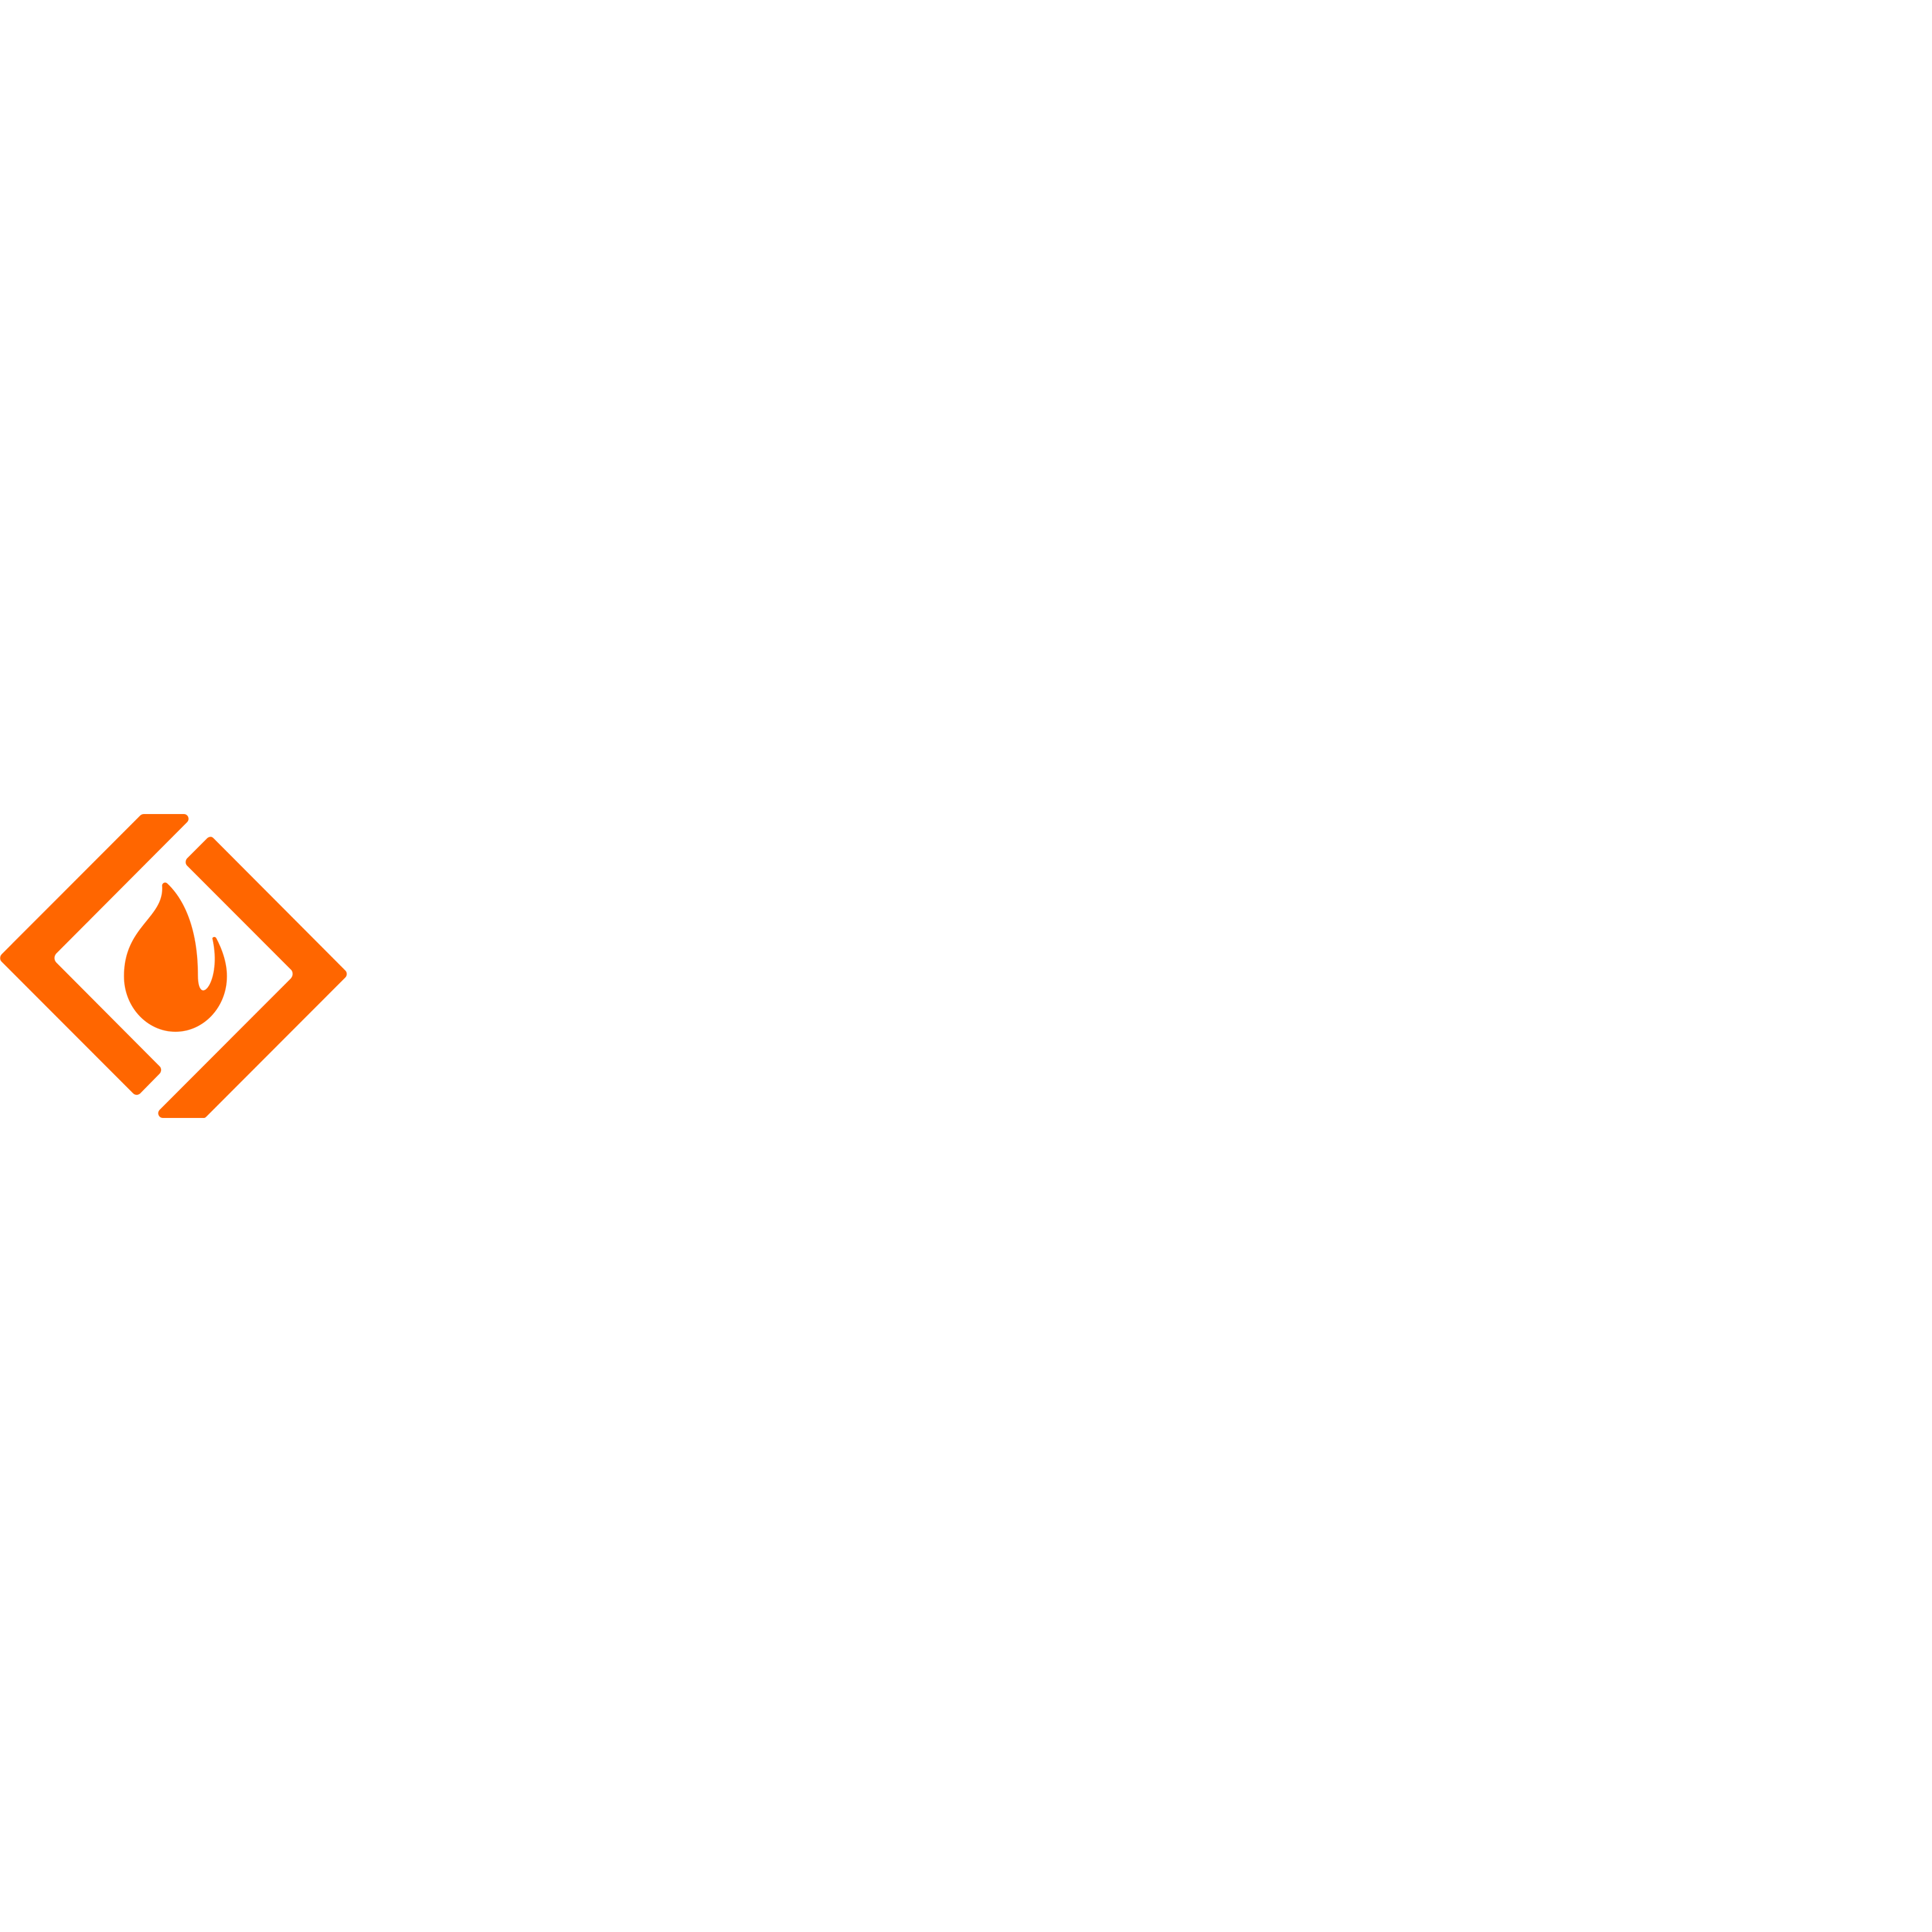 Sourceforge Logo Transparent Image